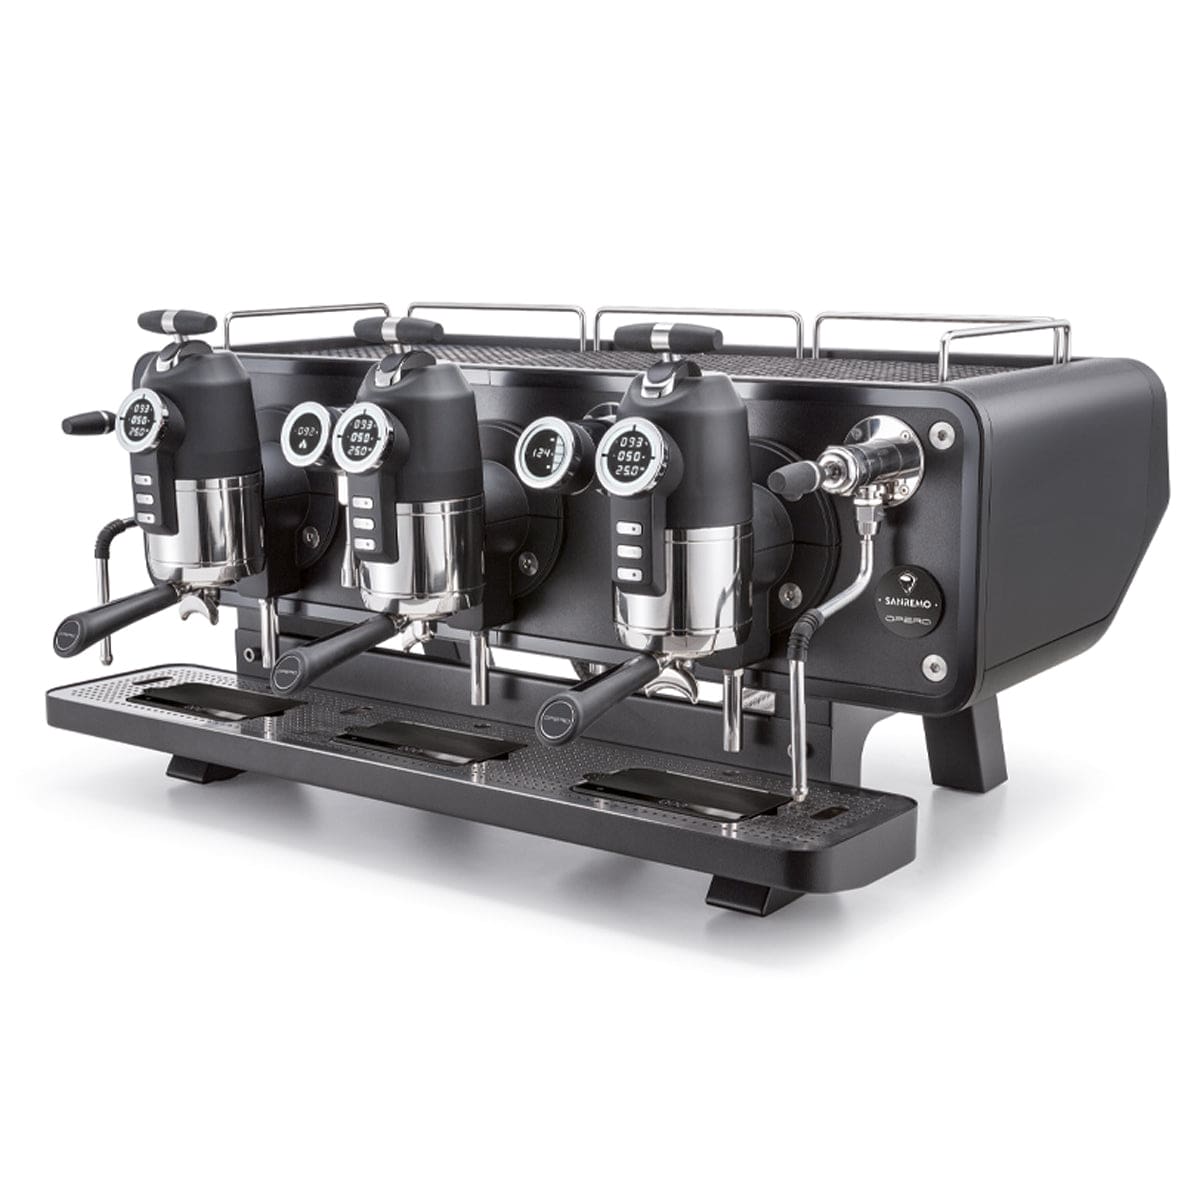 Sanremo Sanremo Opera 2.0 Volumetric Multi-Boiler Espresso Machine Espresso Machines 2 Group / Black